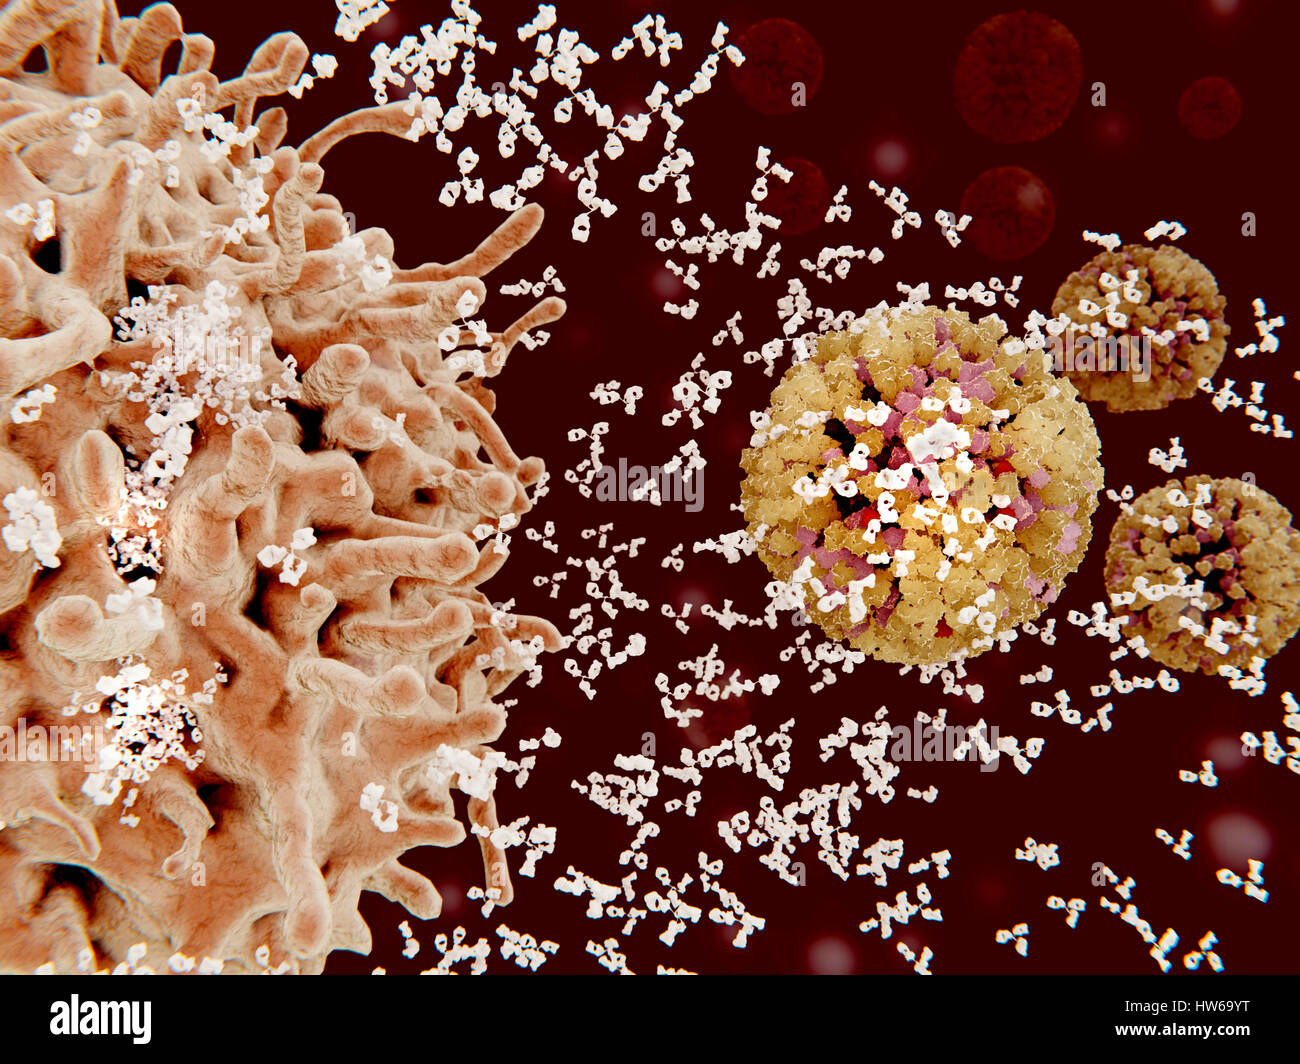 Computer Bild einer Plasma-Zelle (B-Zelle, links) sezernieren Antikörper (weiß) gegen Influenza-Viren (rechts). Antikörper binden an spezifische Antigene, zum Beispiel virale Proteine, markiert sie für Zerstörung durch Phagozyten Immunzellen. Stockfoto